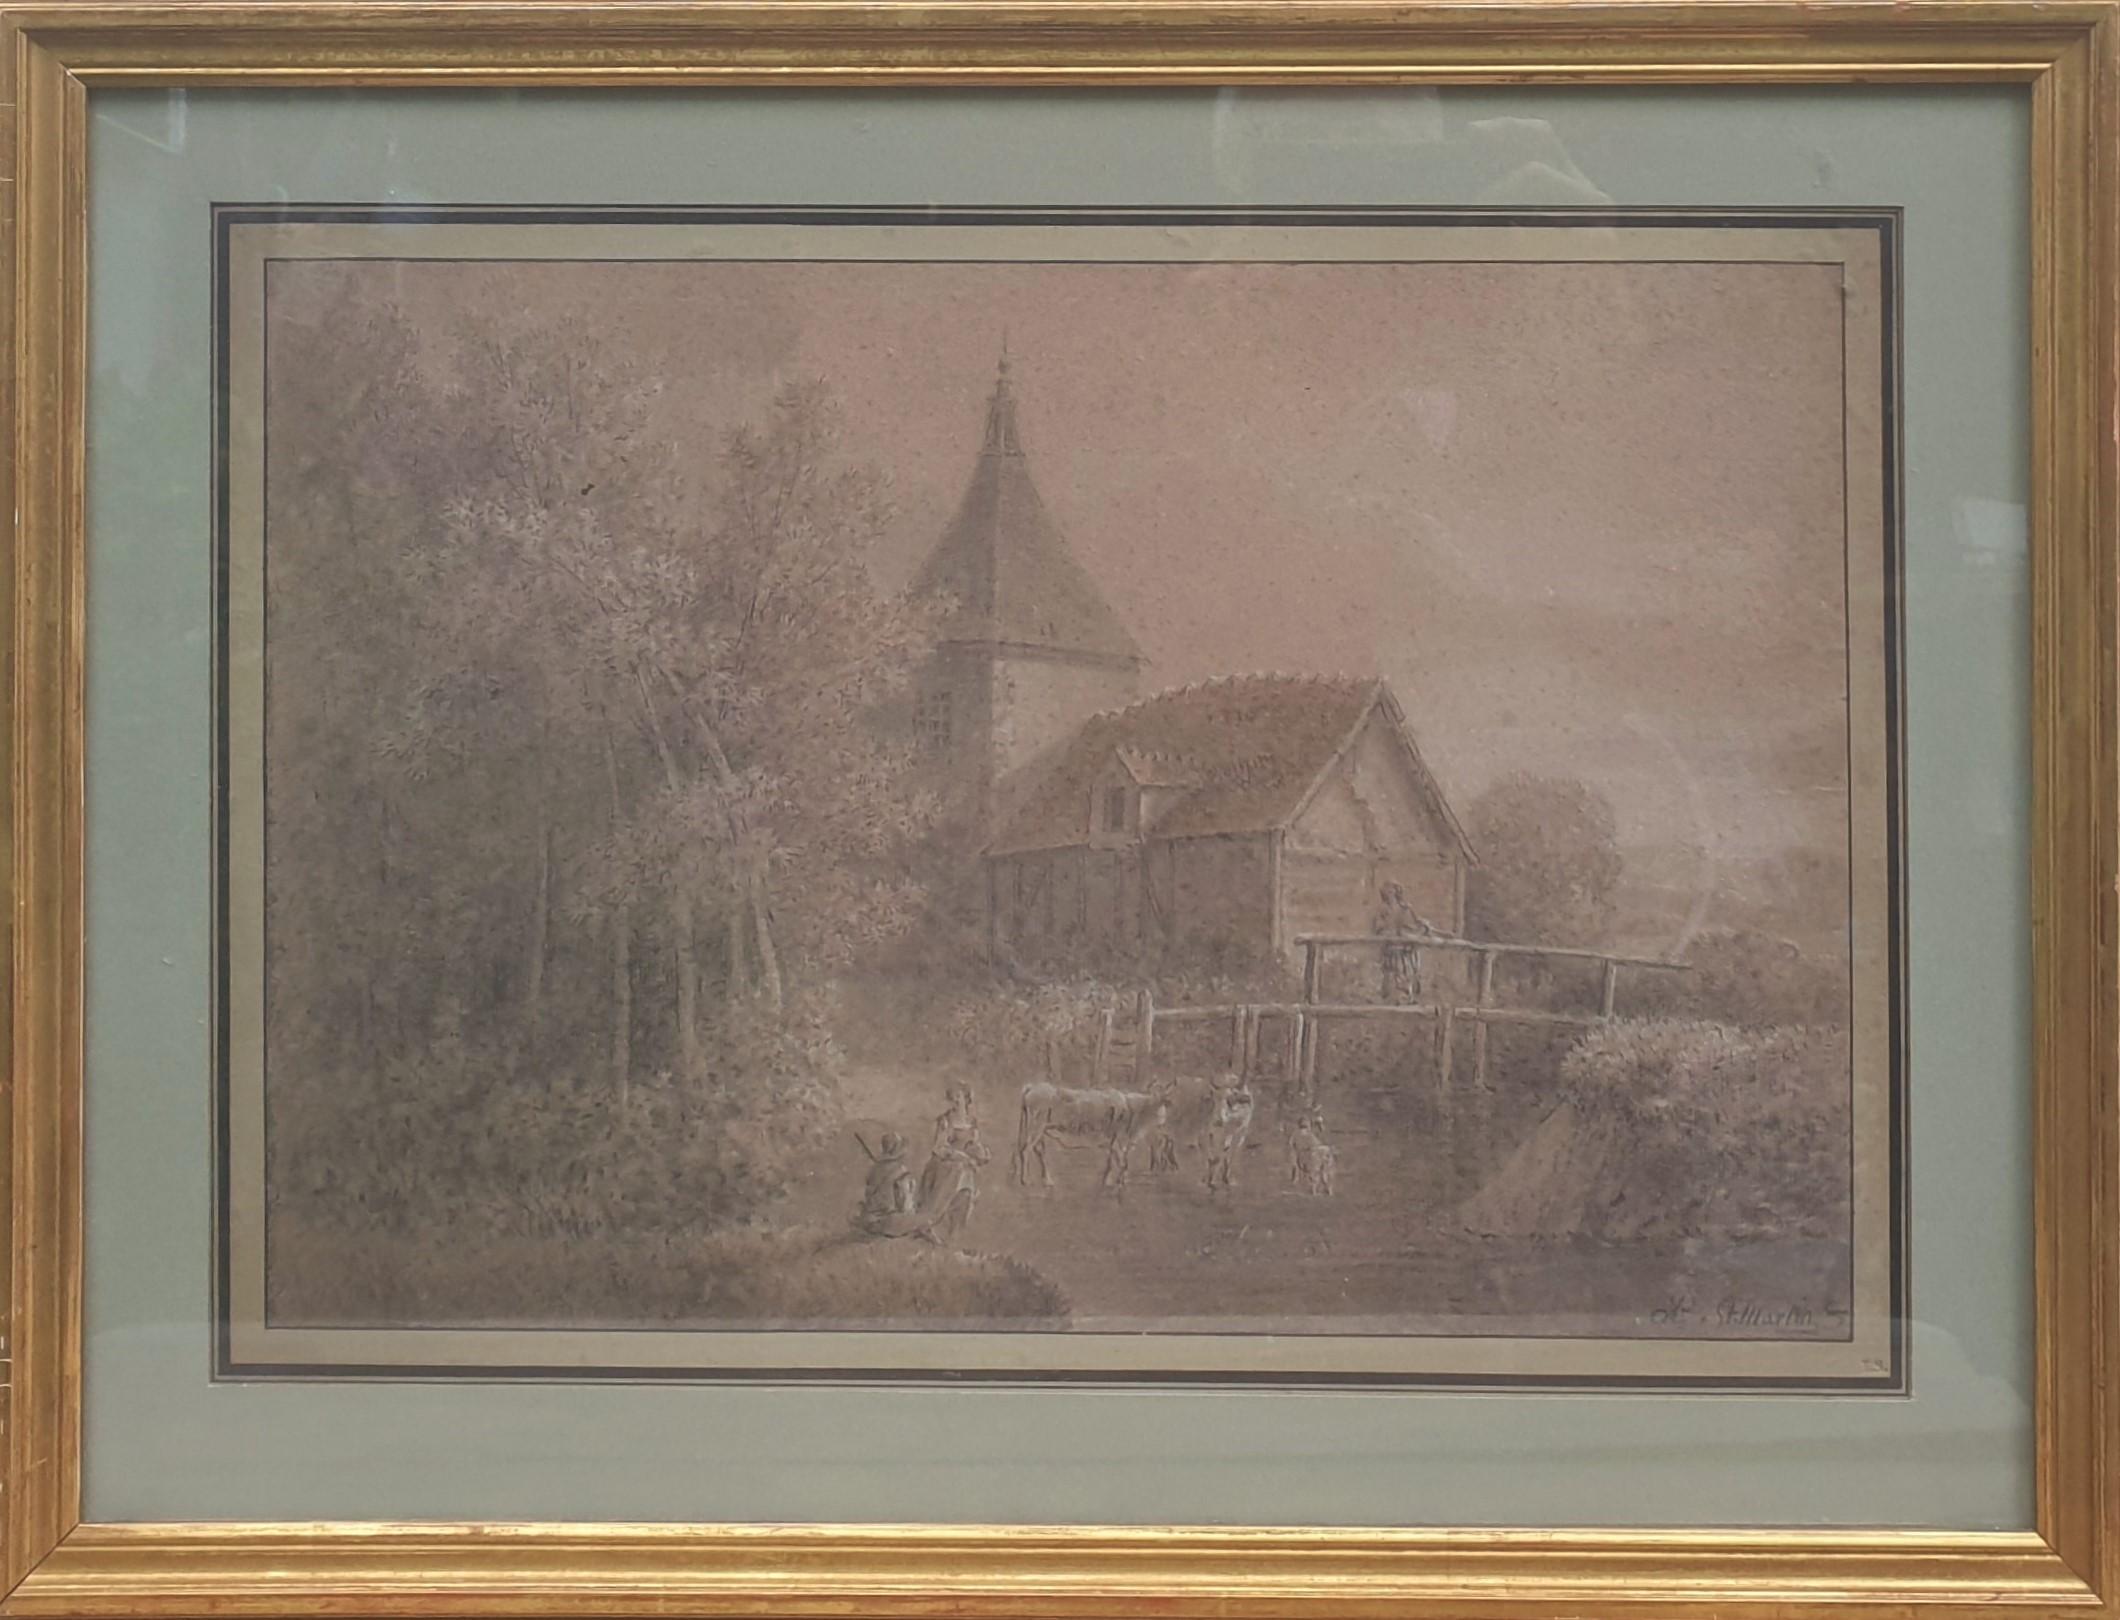 Alexandre PAU de SAINT-MARTIN Landscape Art - Drawing PAU de SAINT-MARTIN pencil gouache sanguine Landscape mill river 18th